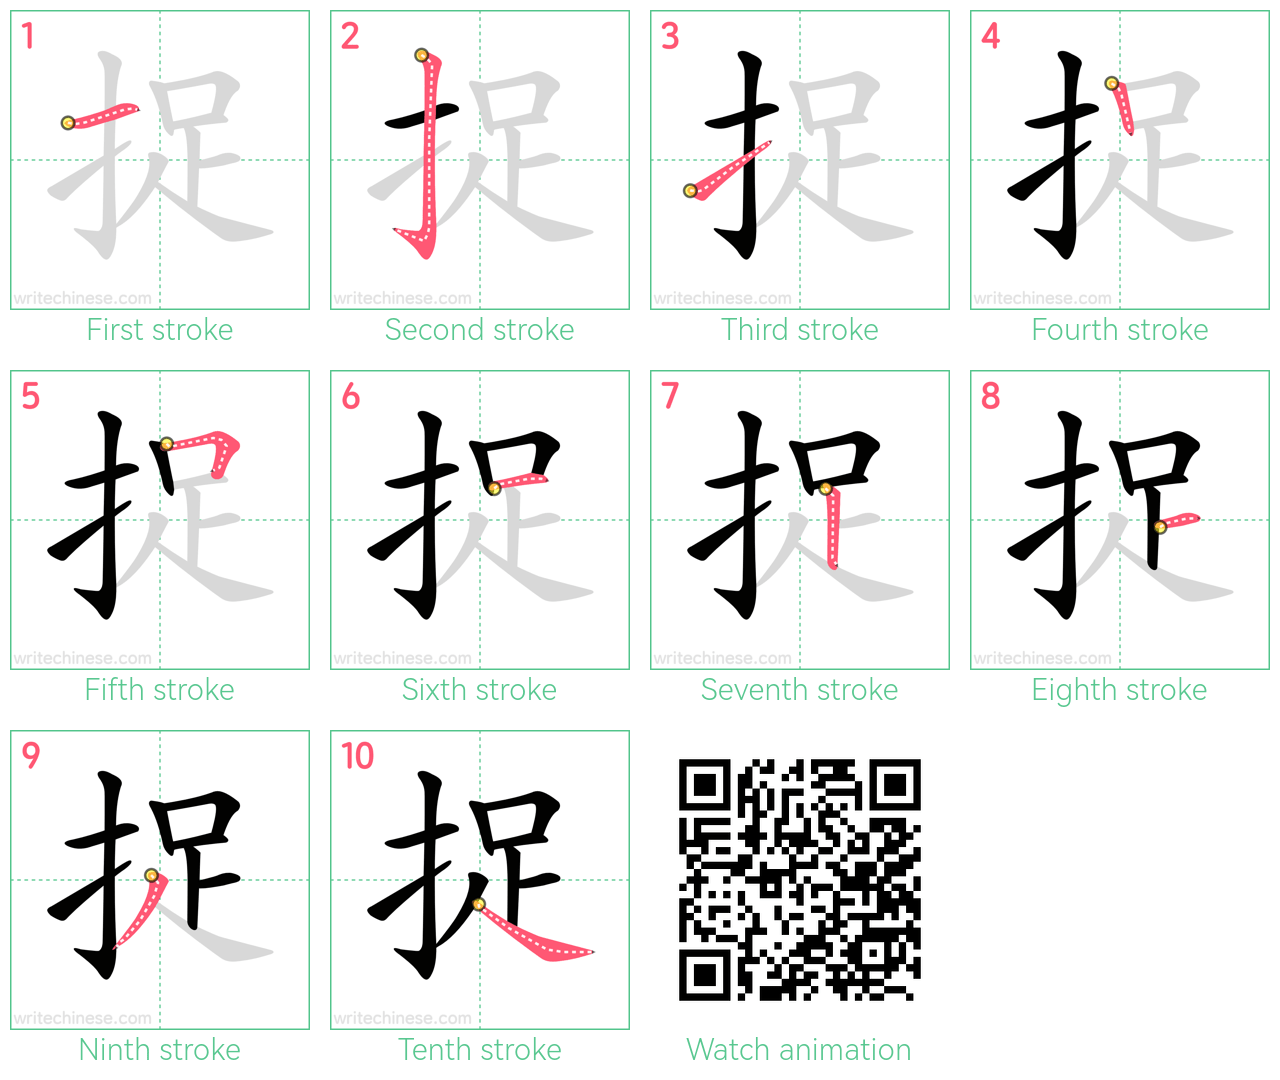 捉 step-by-step stroke order diagrams